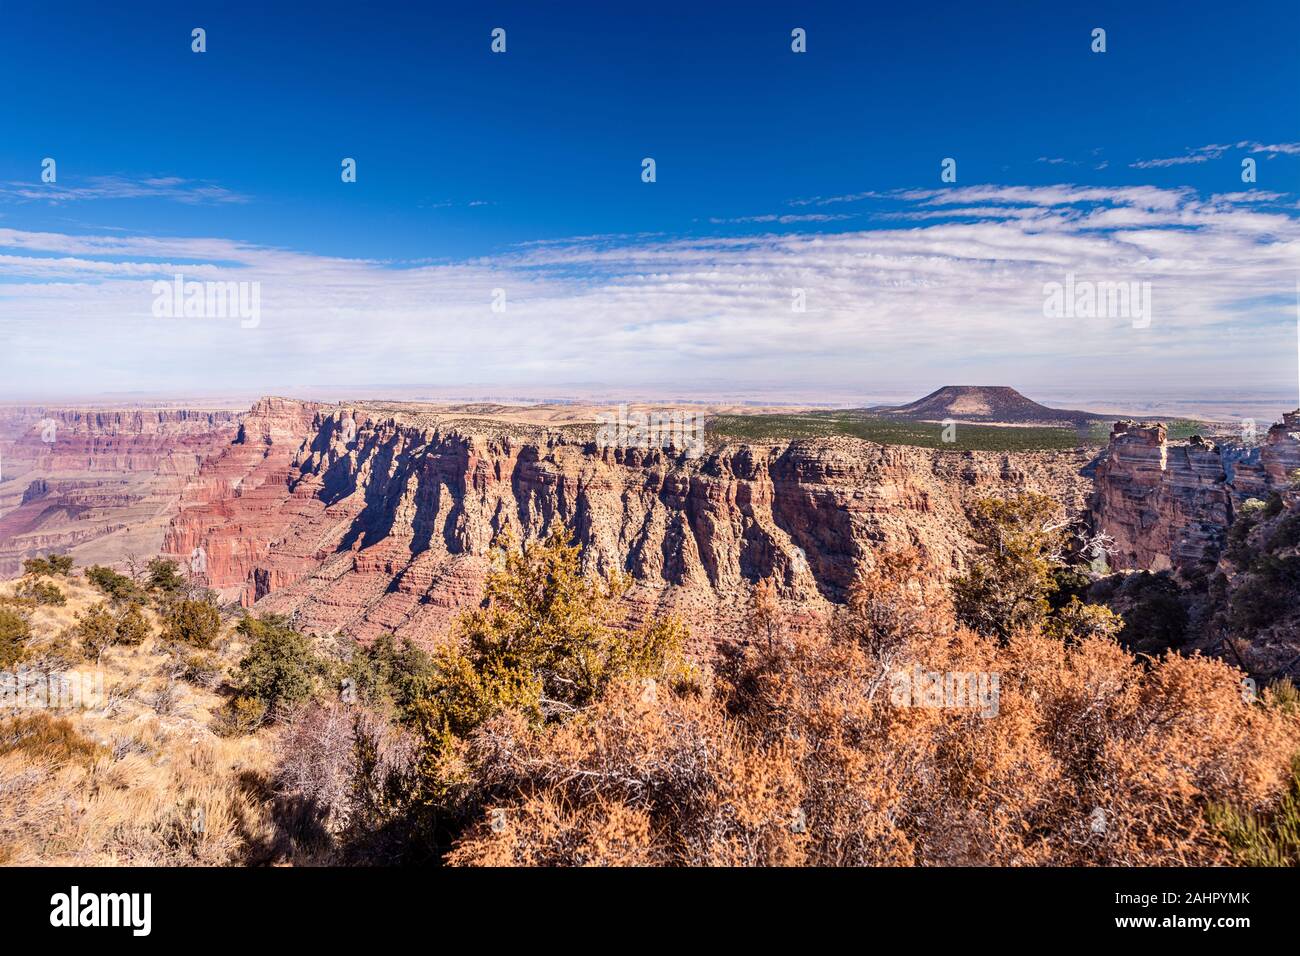 Una vista panoramica delle zone montane del Grand Canyon come si vede dalla vista del deserto si affacciano. Foto Stock